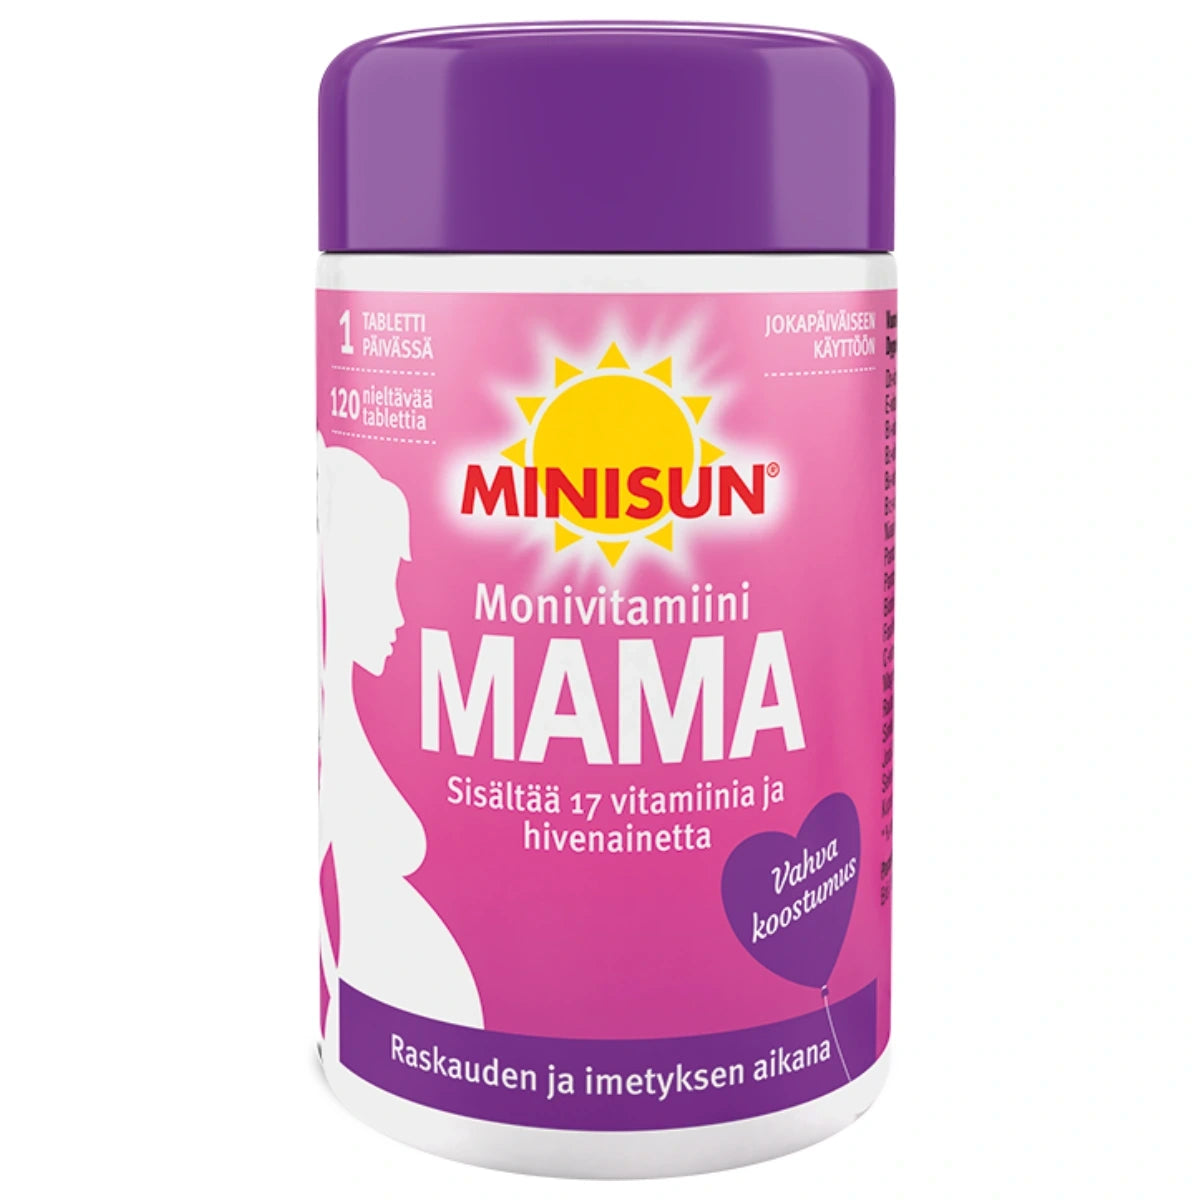 MINISUN Monivitamiini Mama tabletti 120 kpl erityisesti raskaana oleville ja imettäville naisille.